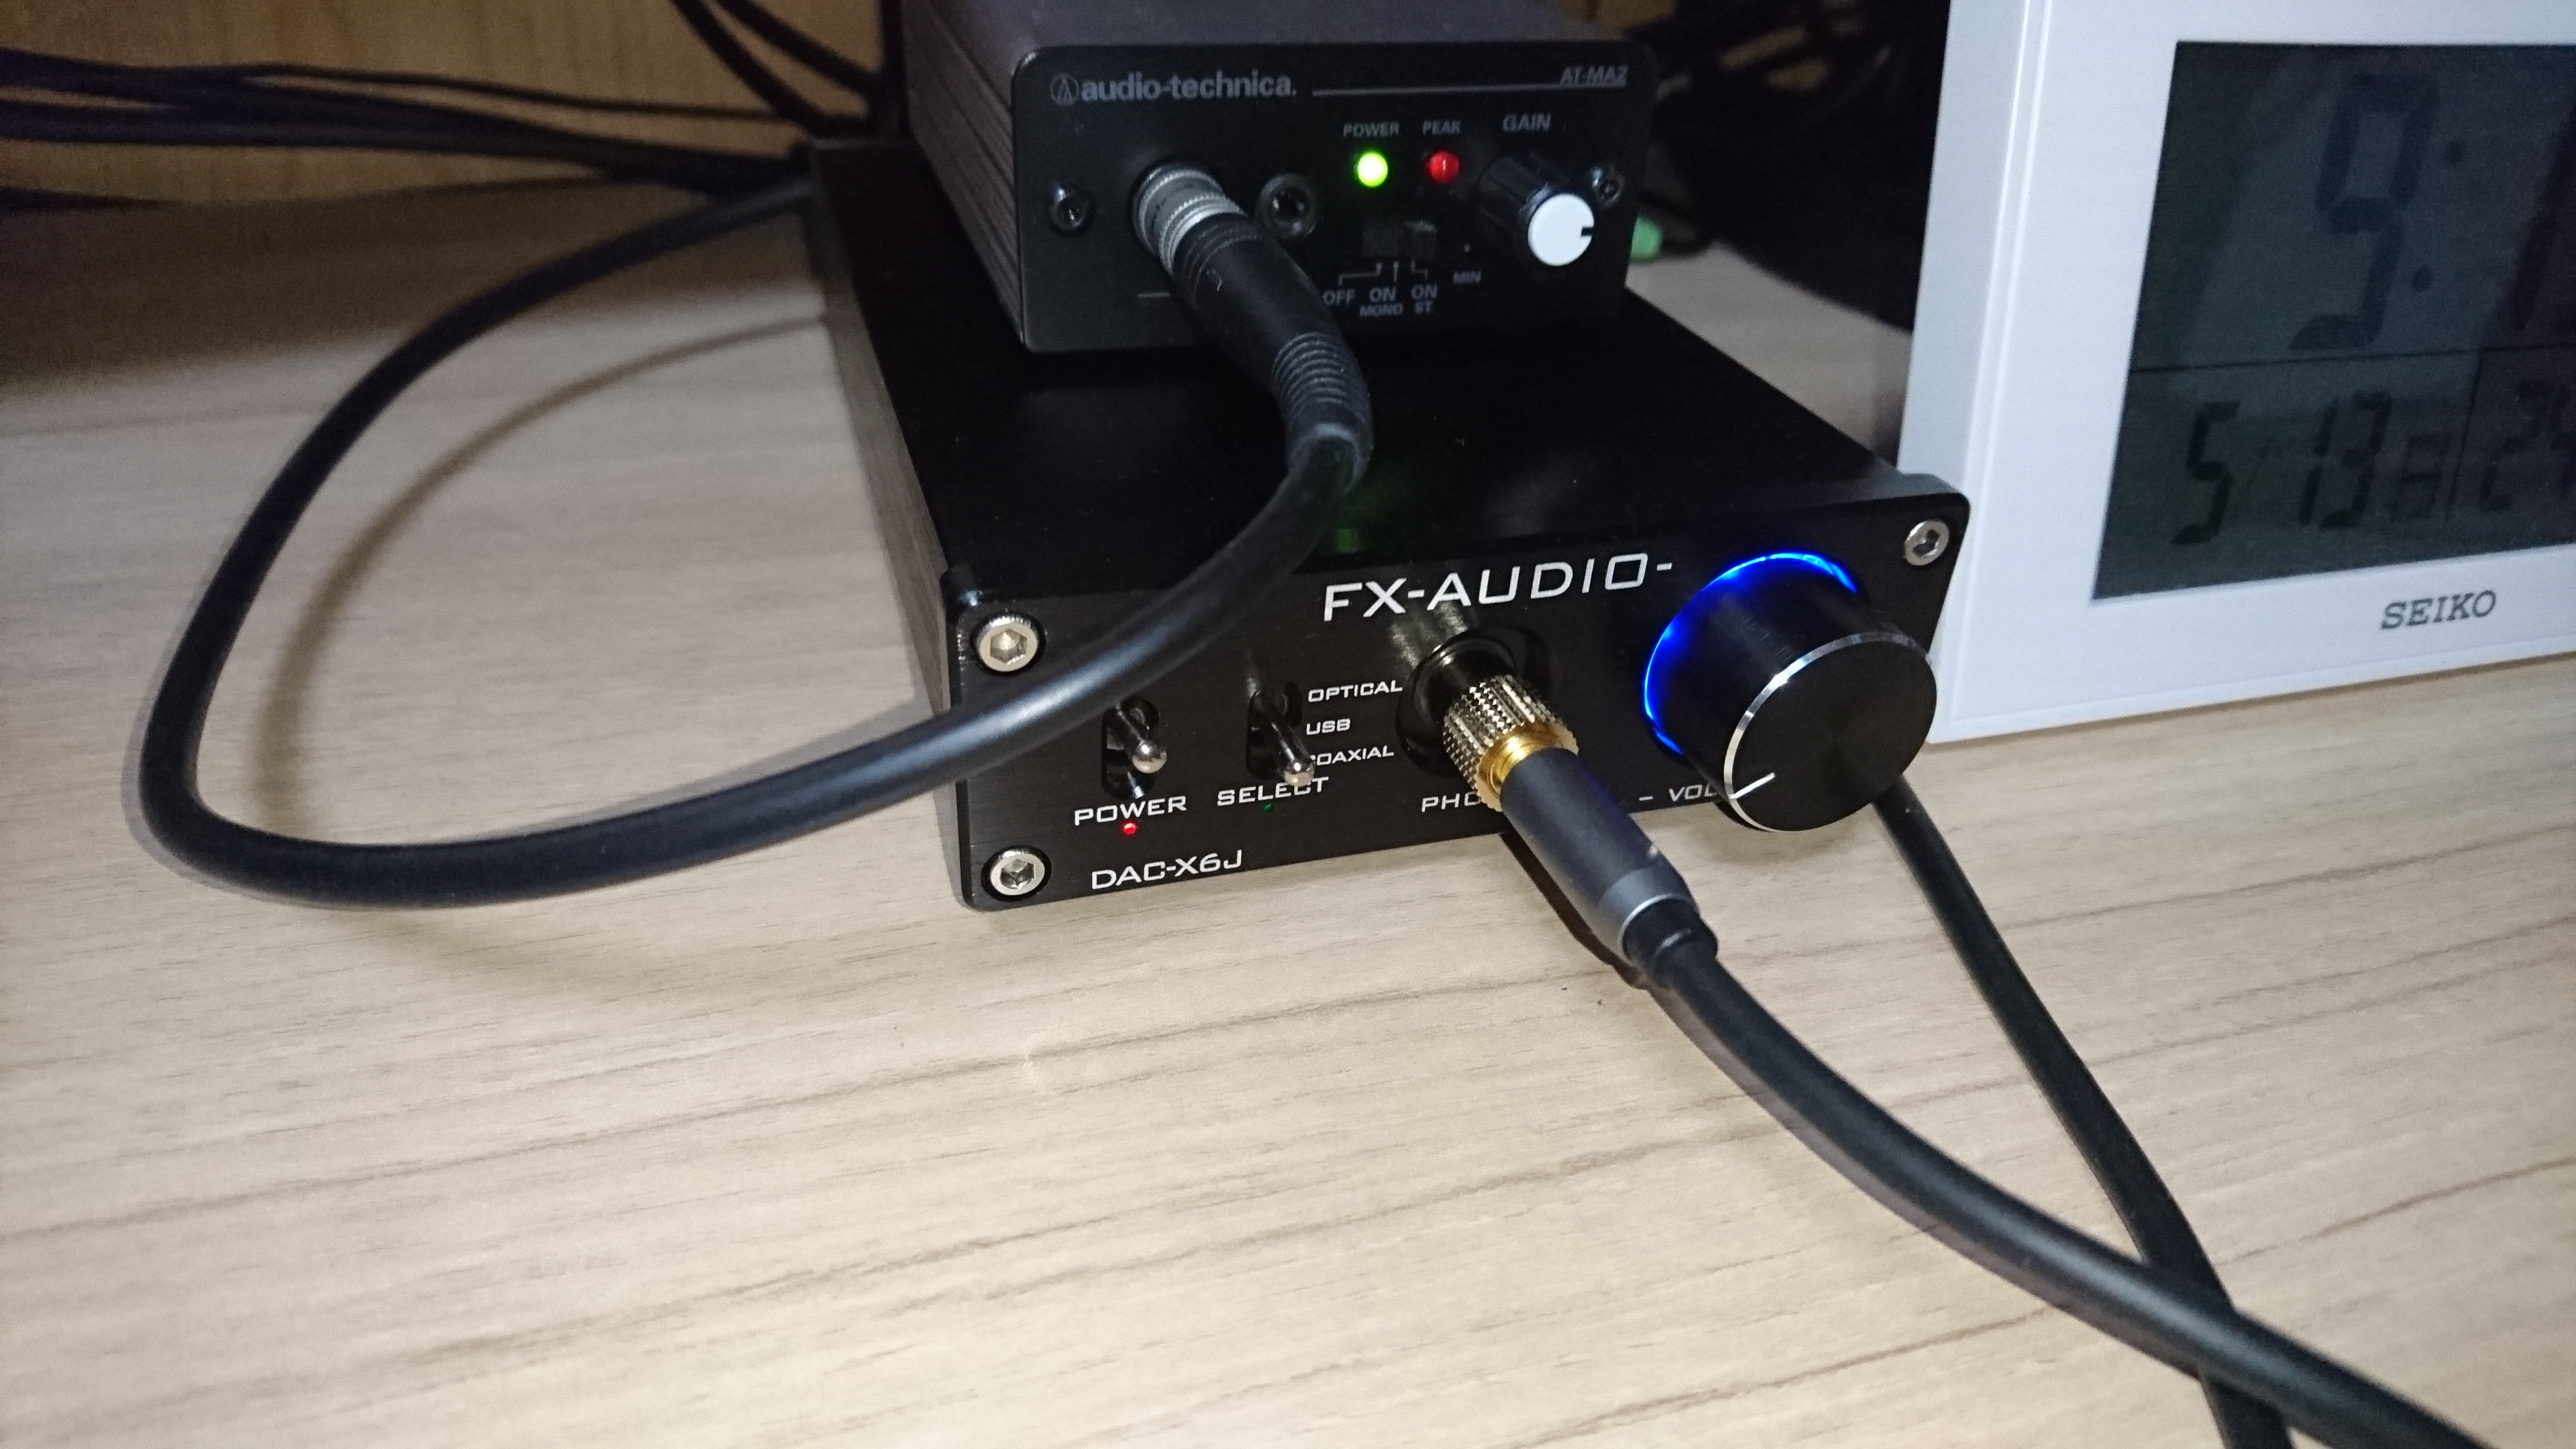 FX-AUDIO- DAC-X6J ヘッドフォンアンプ搭載 USB-DAC